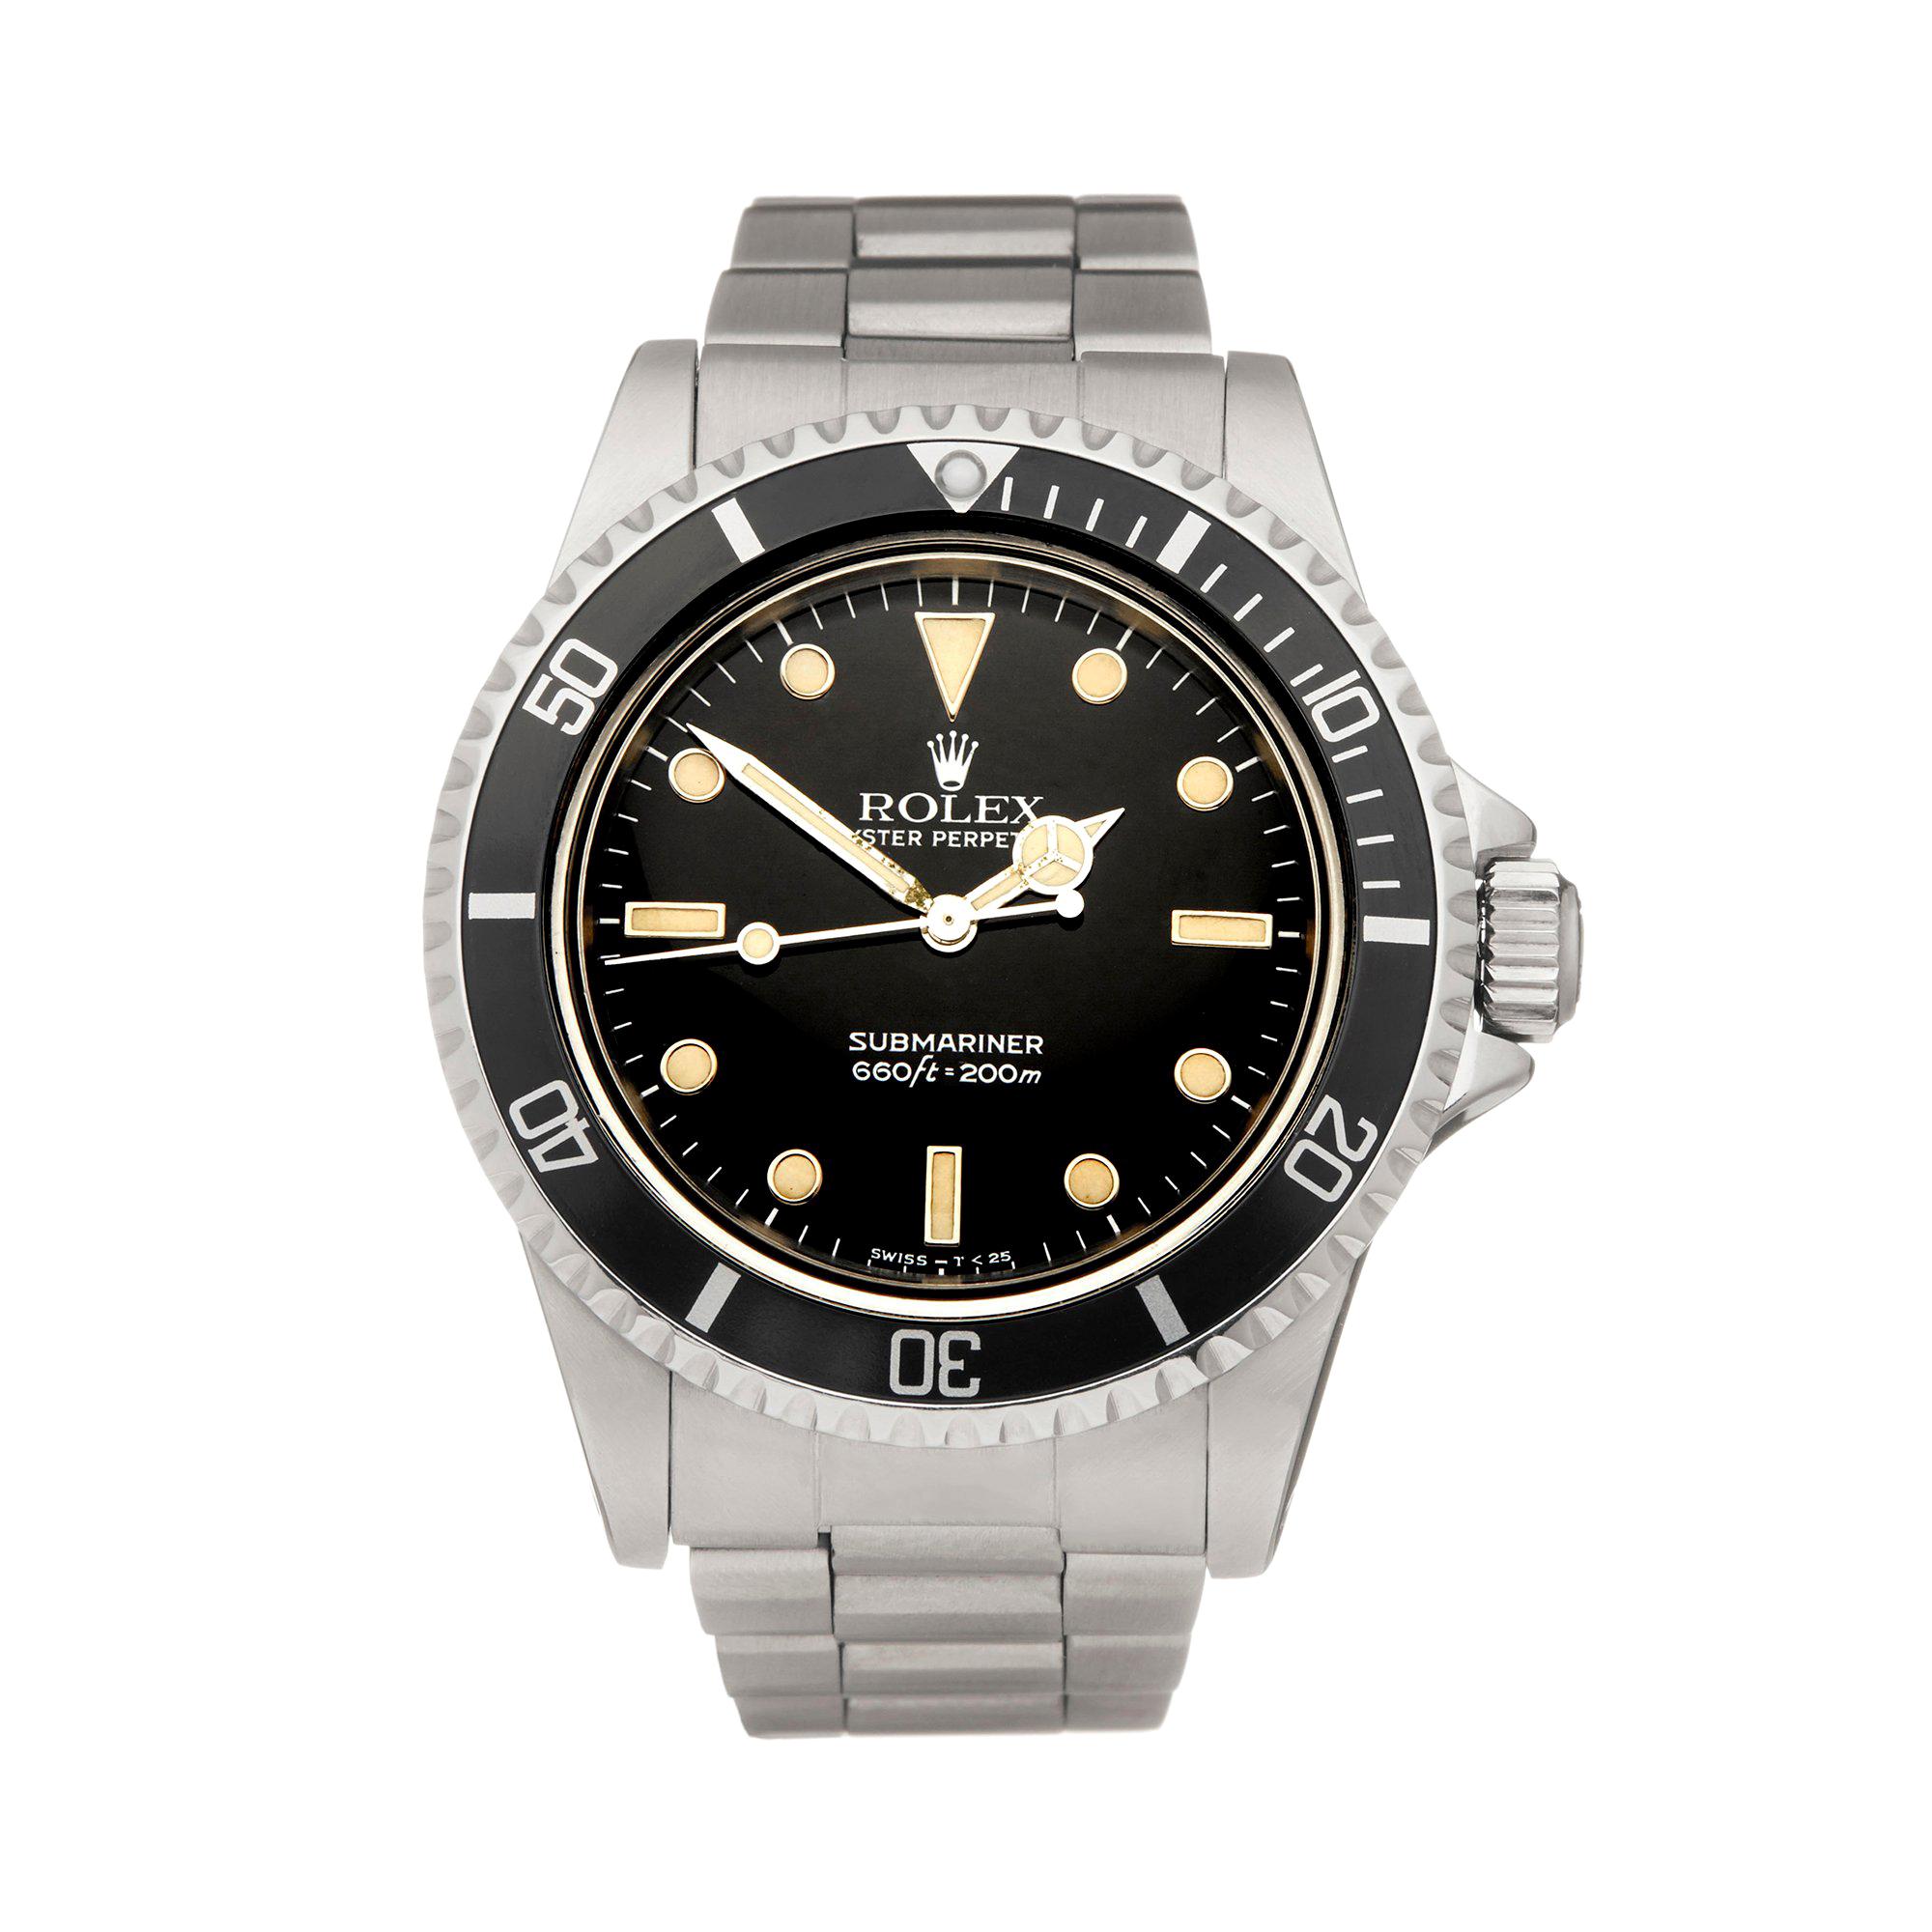 Rolex Submariner Non Date Stainless Steel 5513 Wristwatch